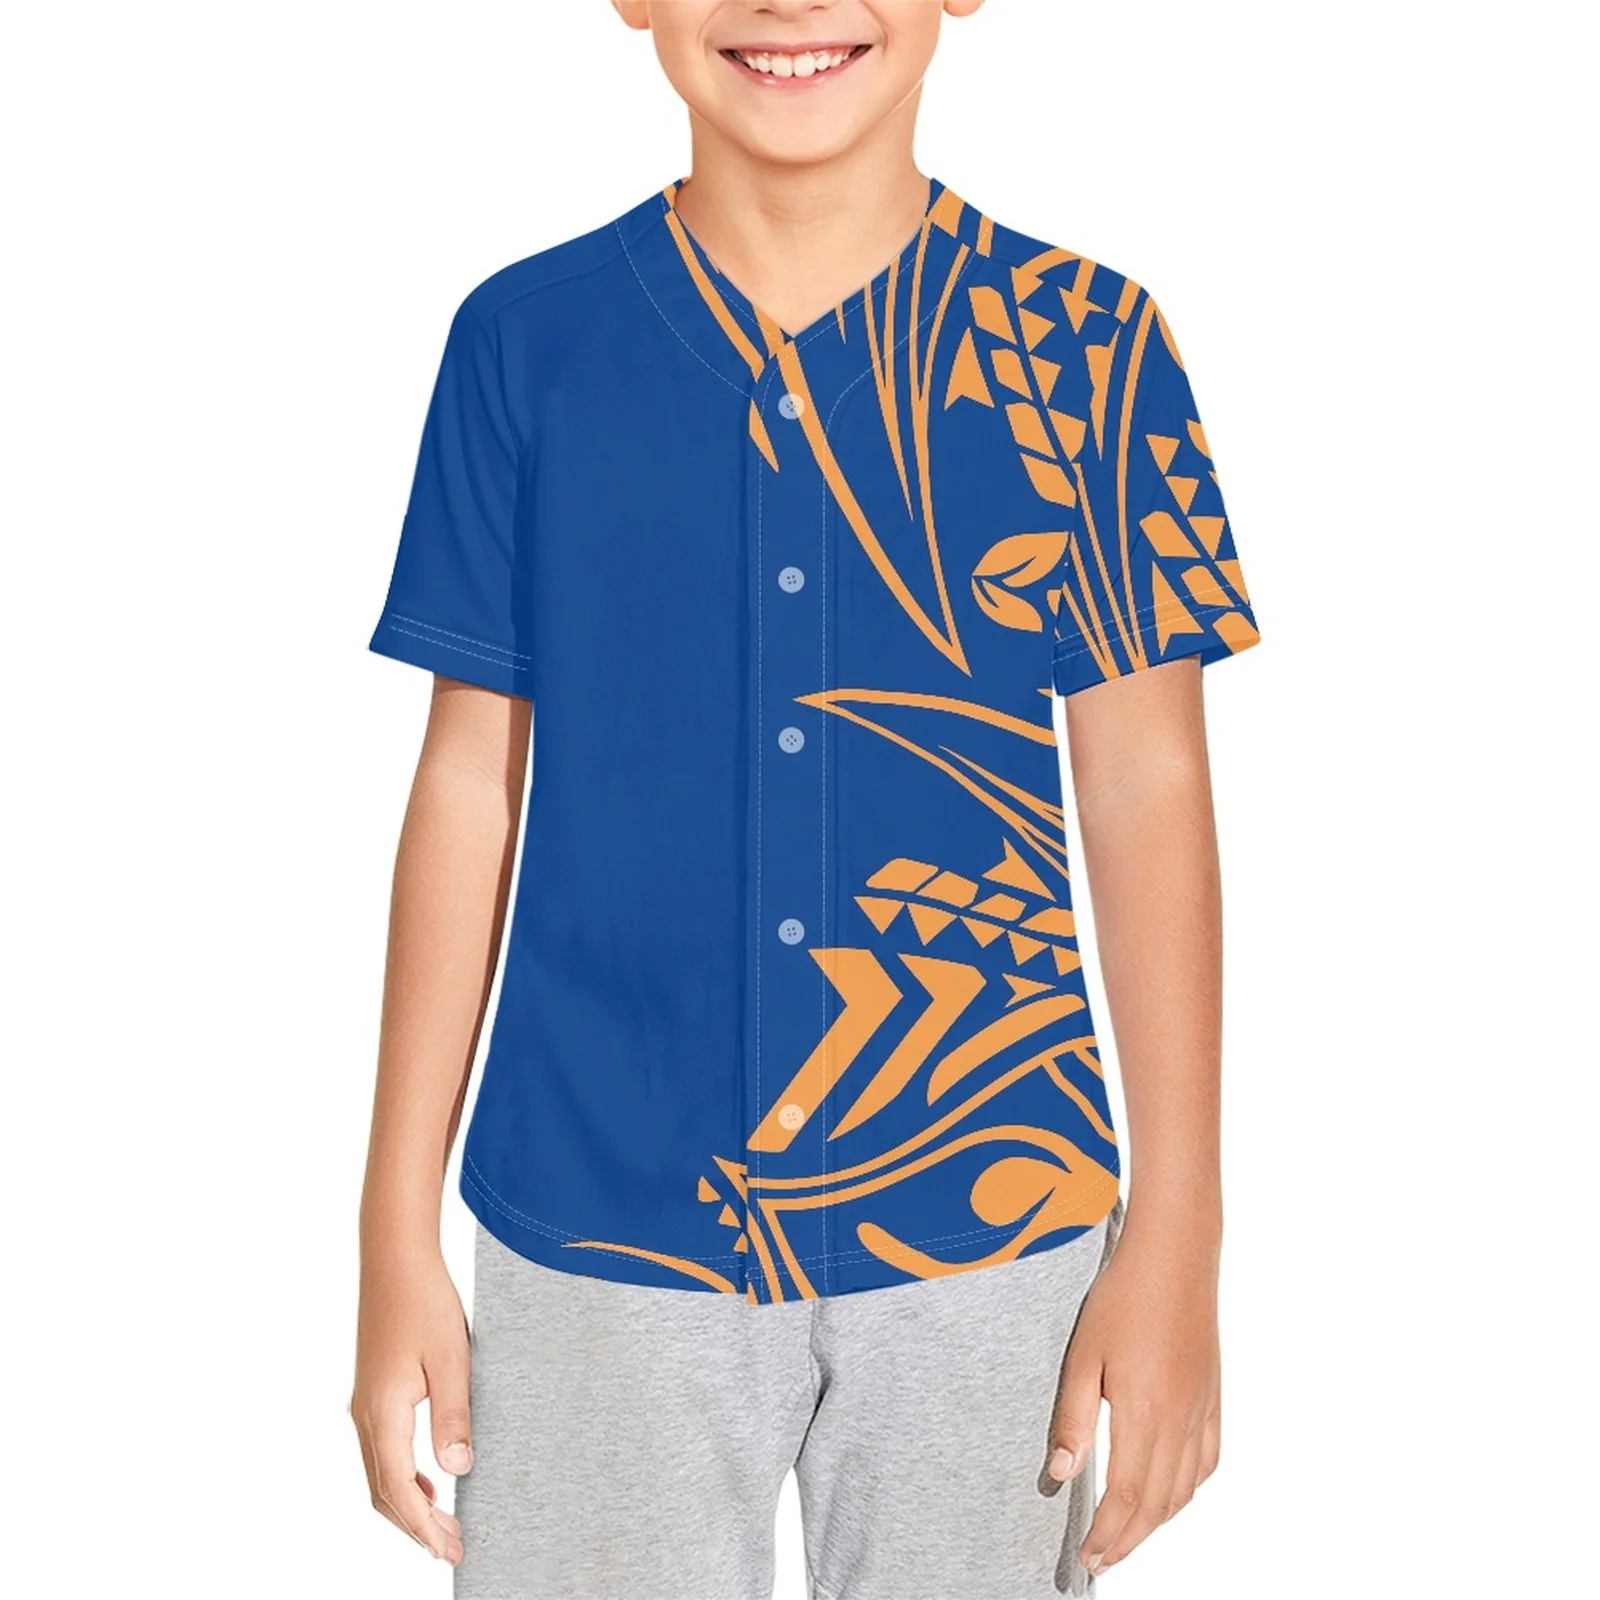 

Полинезийская племенная понпей тотем, Детская футболка с принтом татуировок, бейсбольная Футболка, футболки для бейсбола на заказ, легкие мягкие футболки из полиэстера